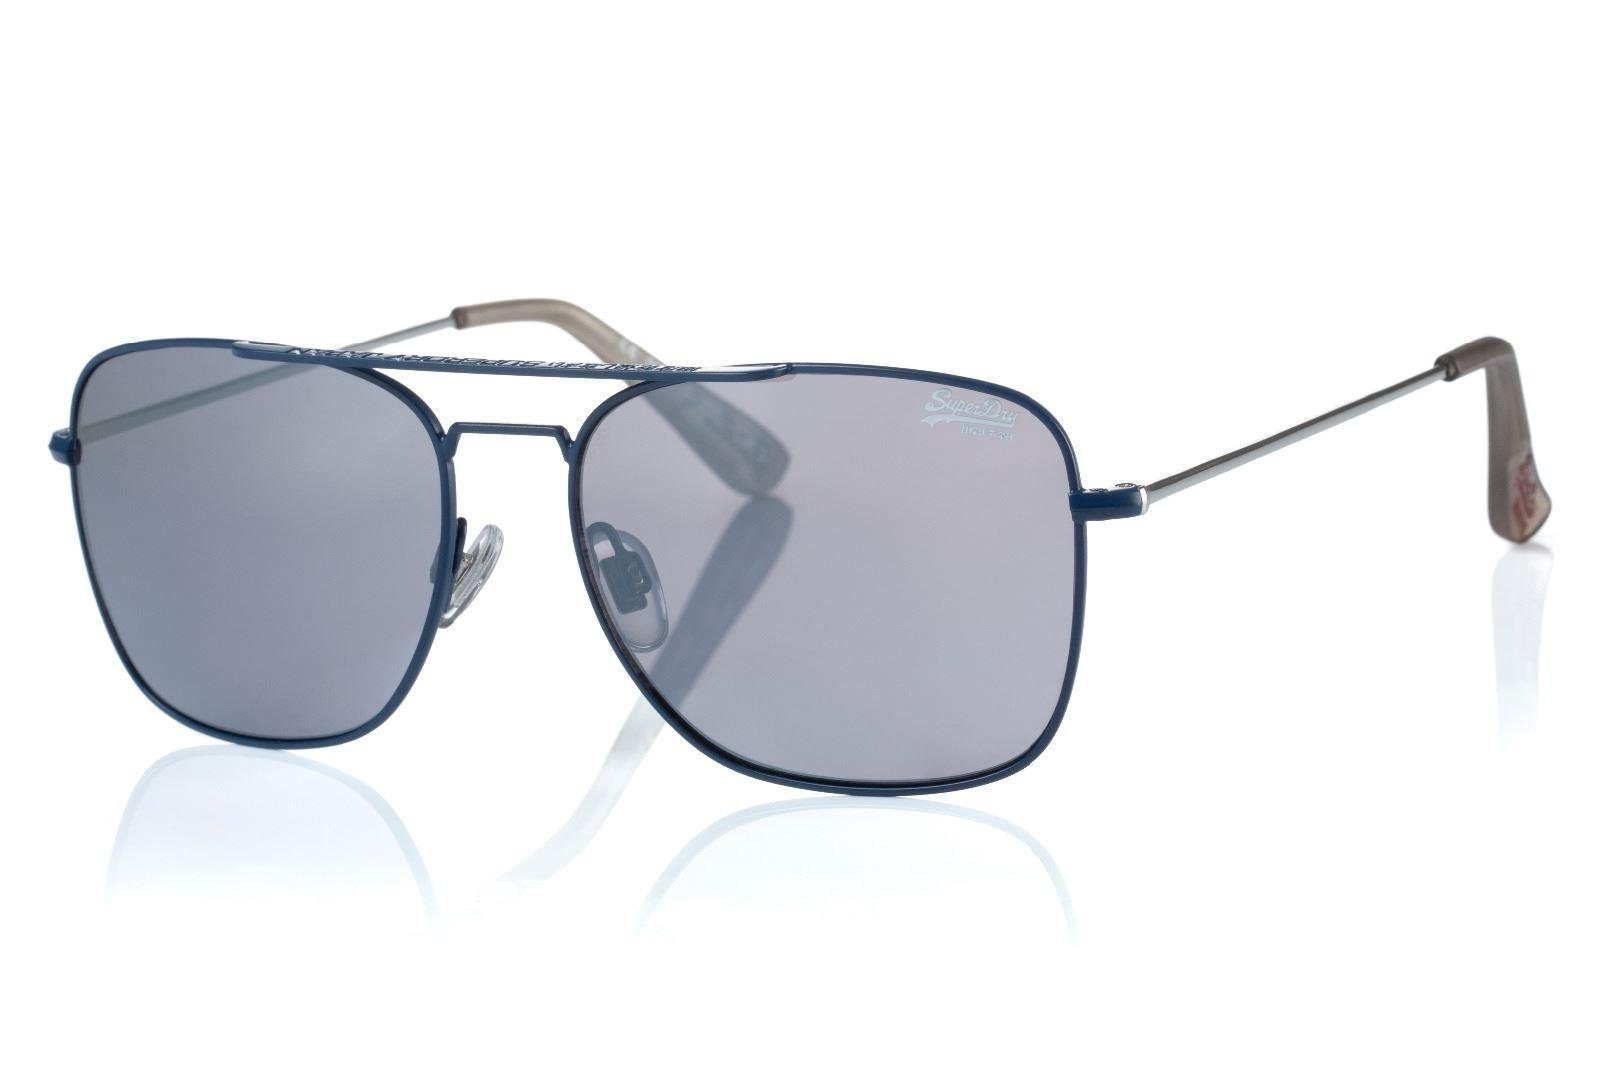 Superdry Sonnenbrille Trident 212 Kunststoff und Metall, Kategorie 3, 56-16/150 | Sonnenbrillen